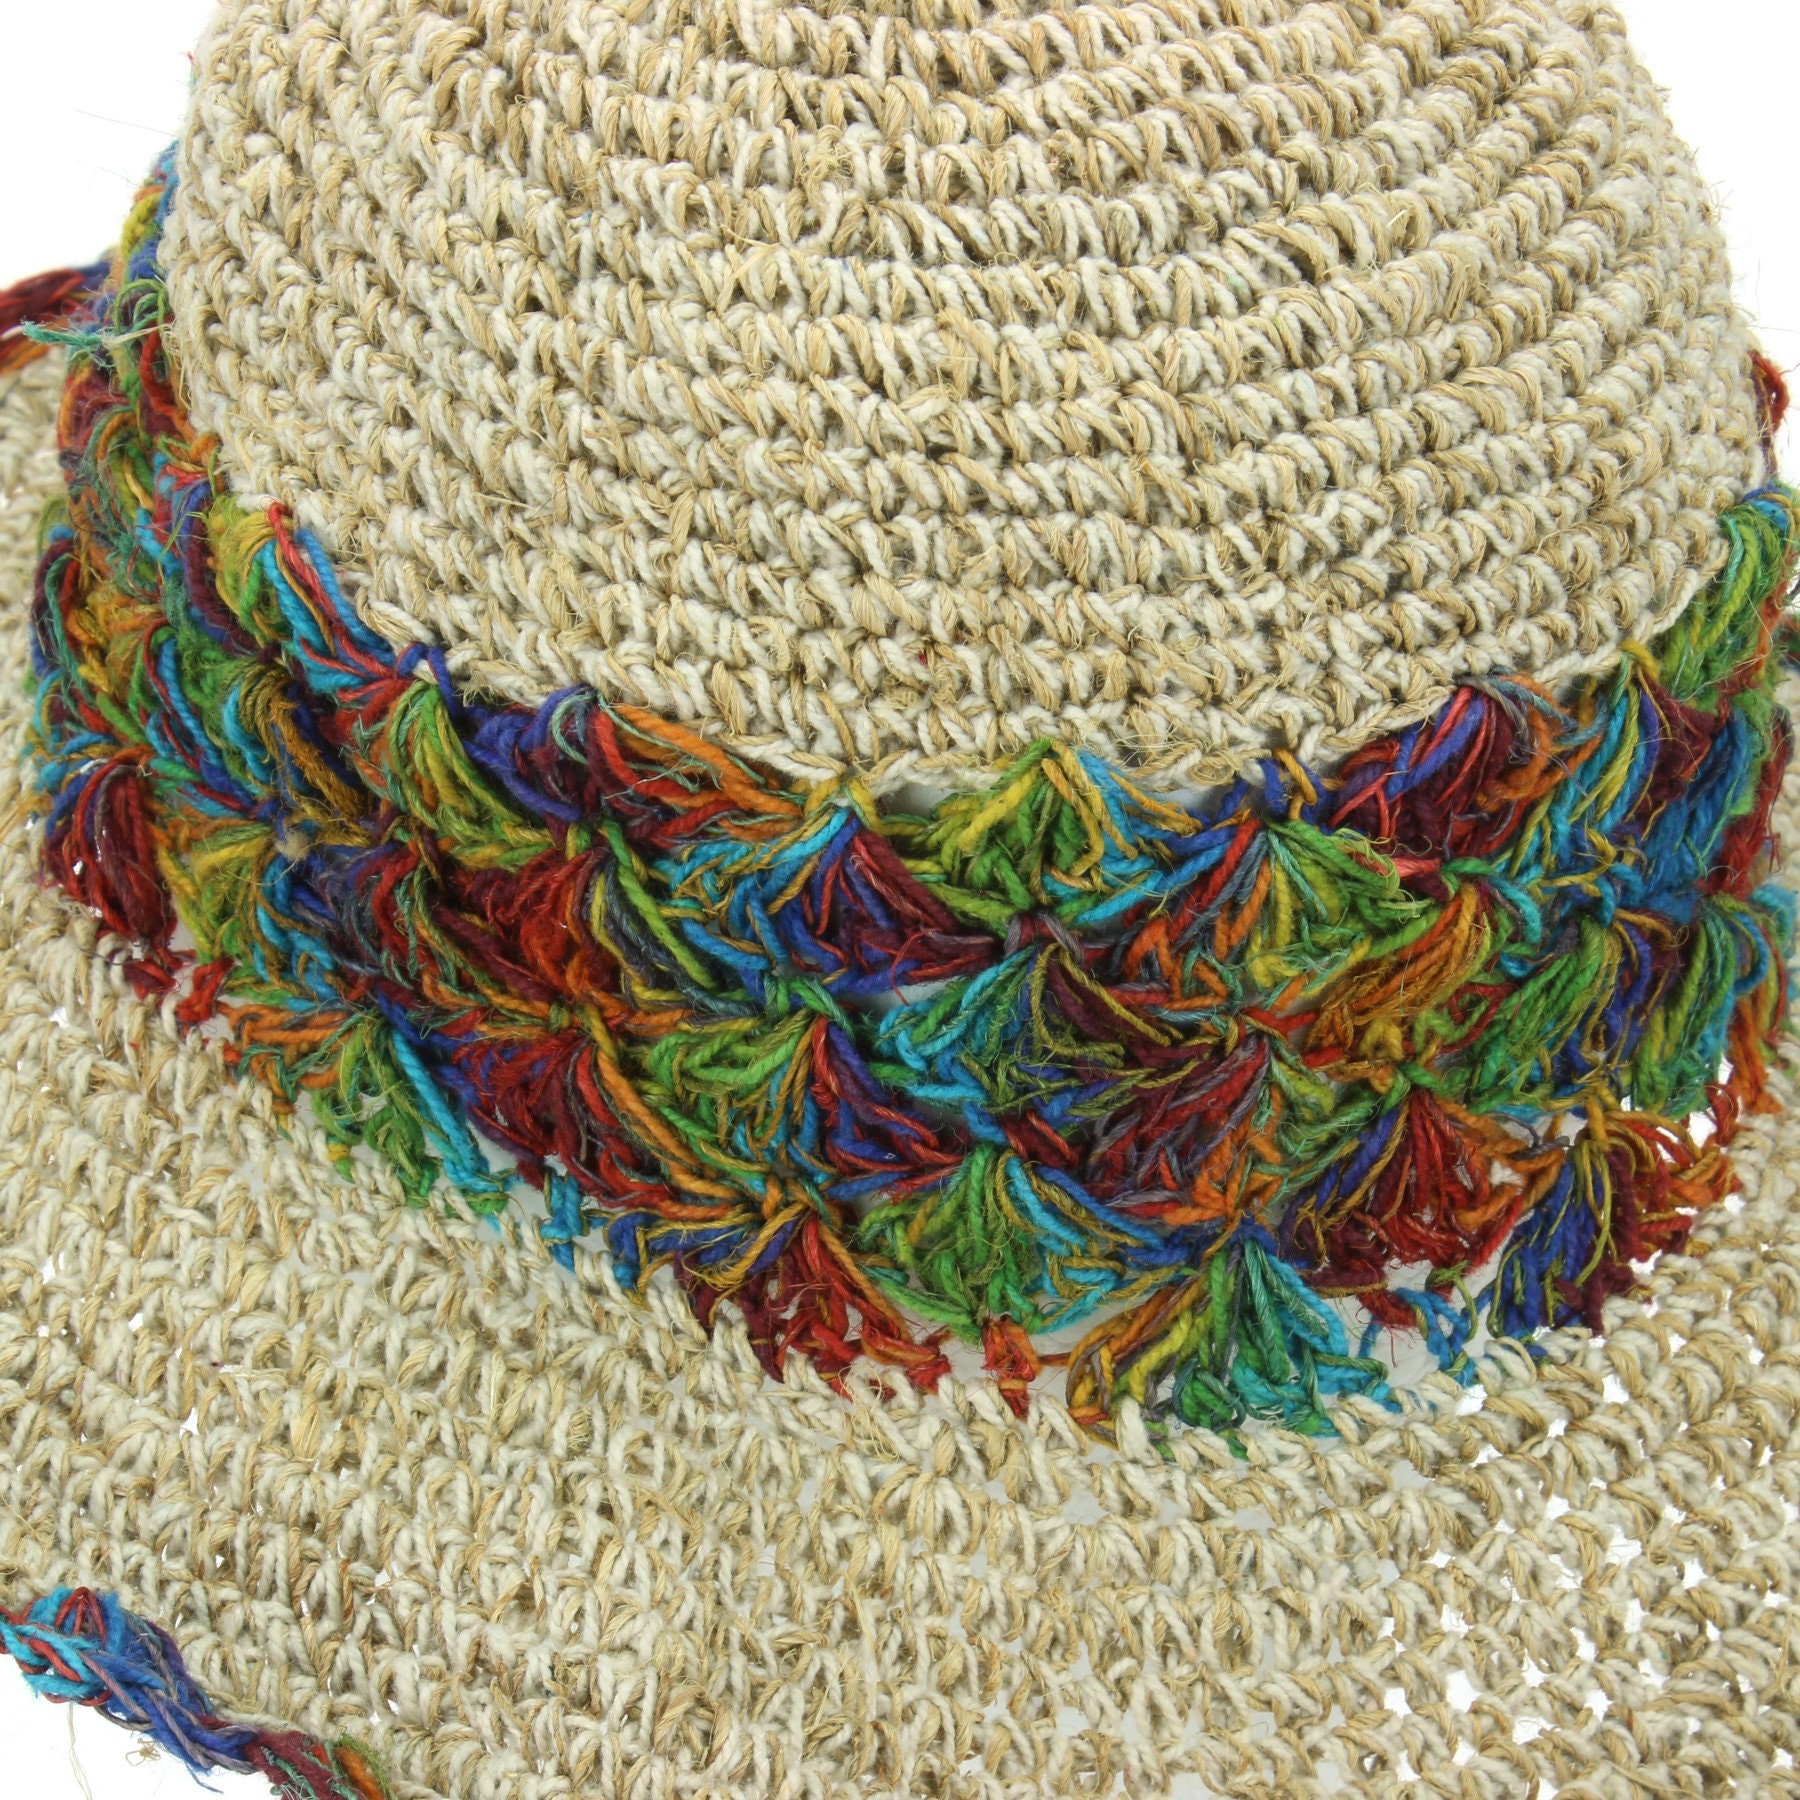 Rainbow Magic Crochet Hippie Hemp Hat in Hemp by TLB